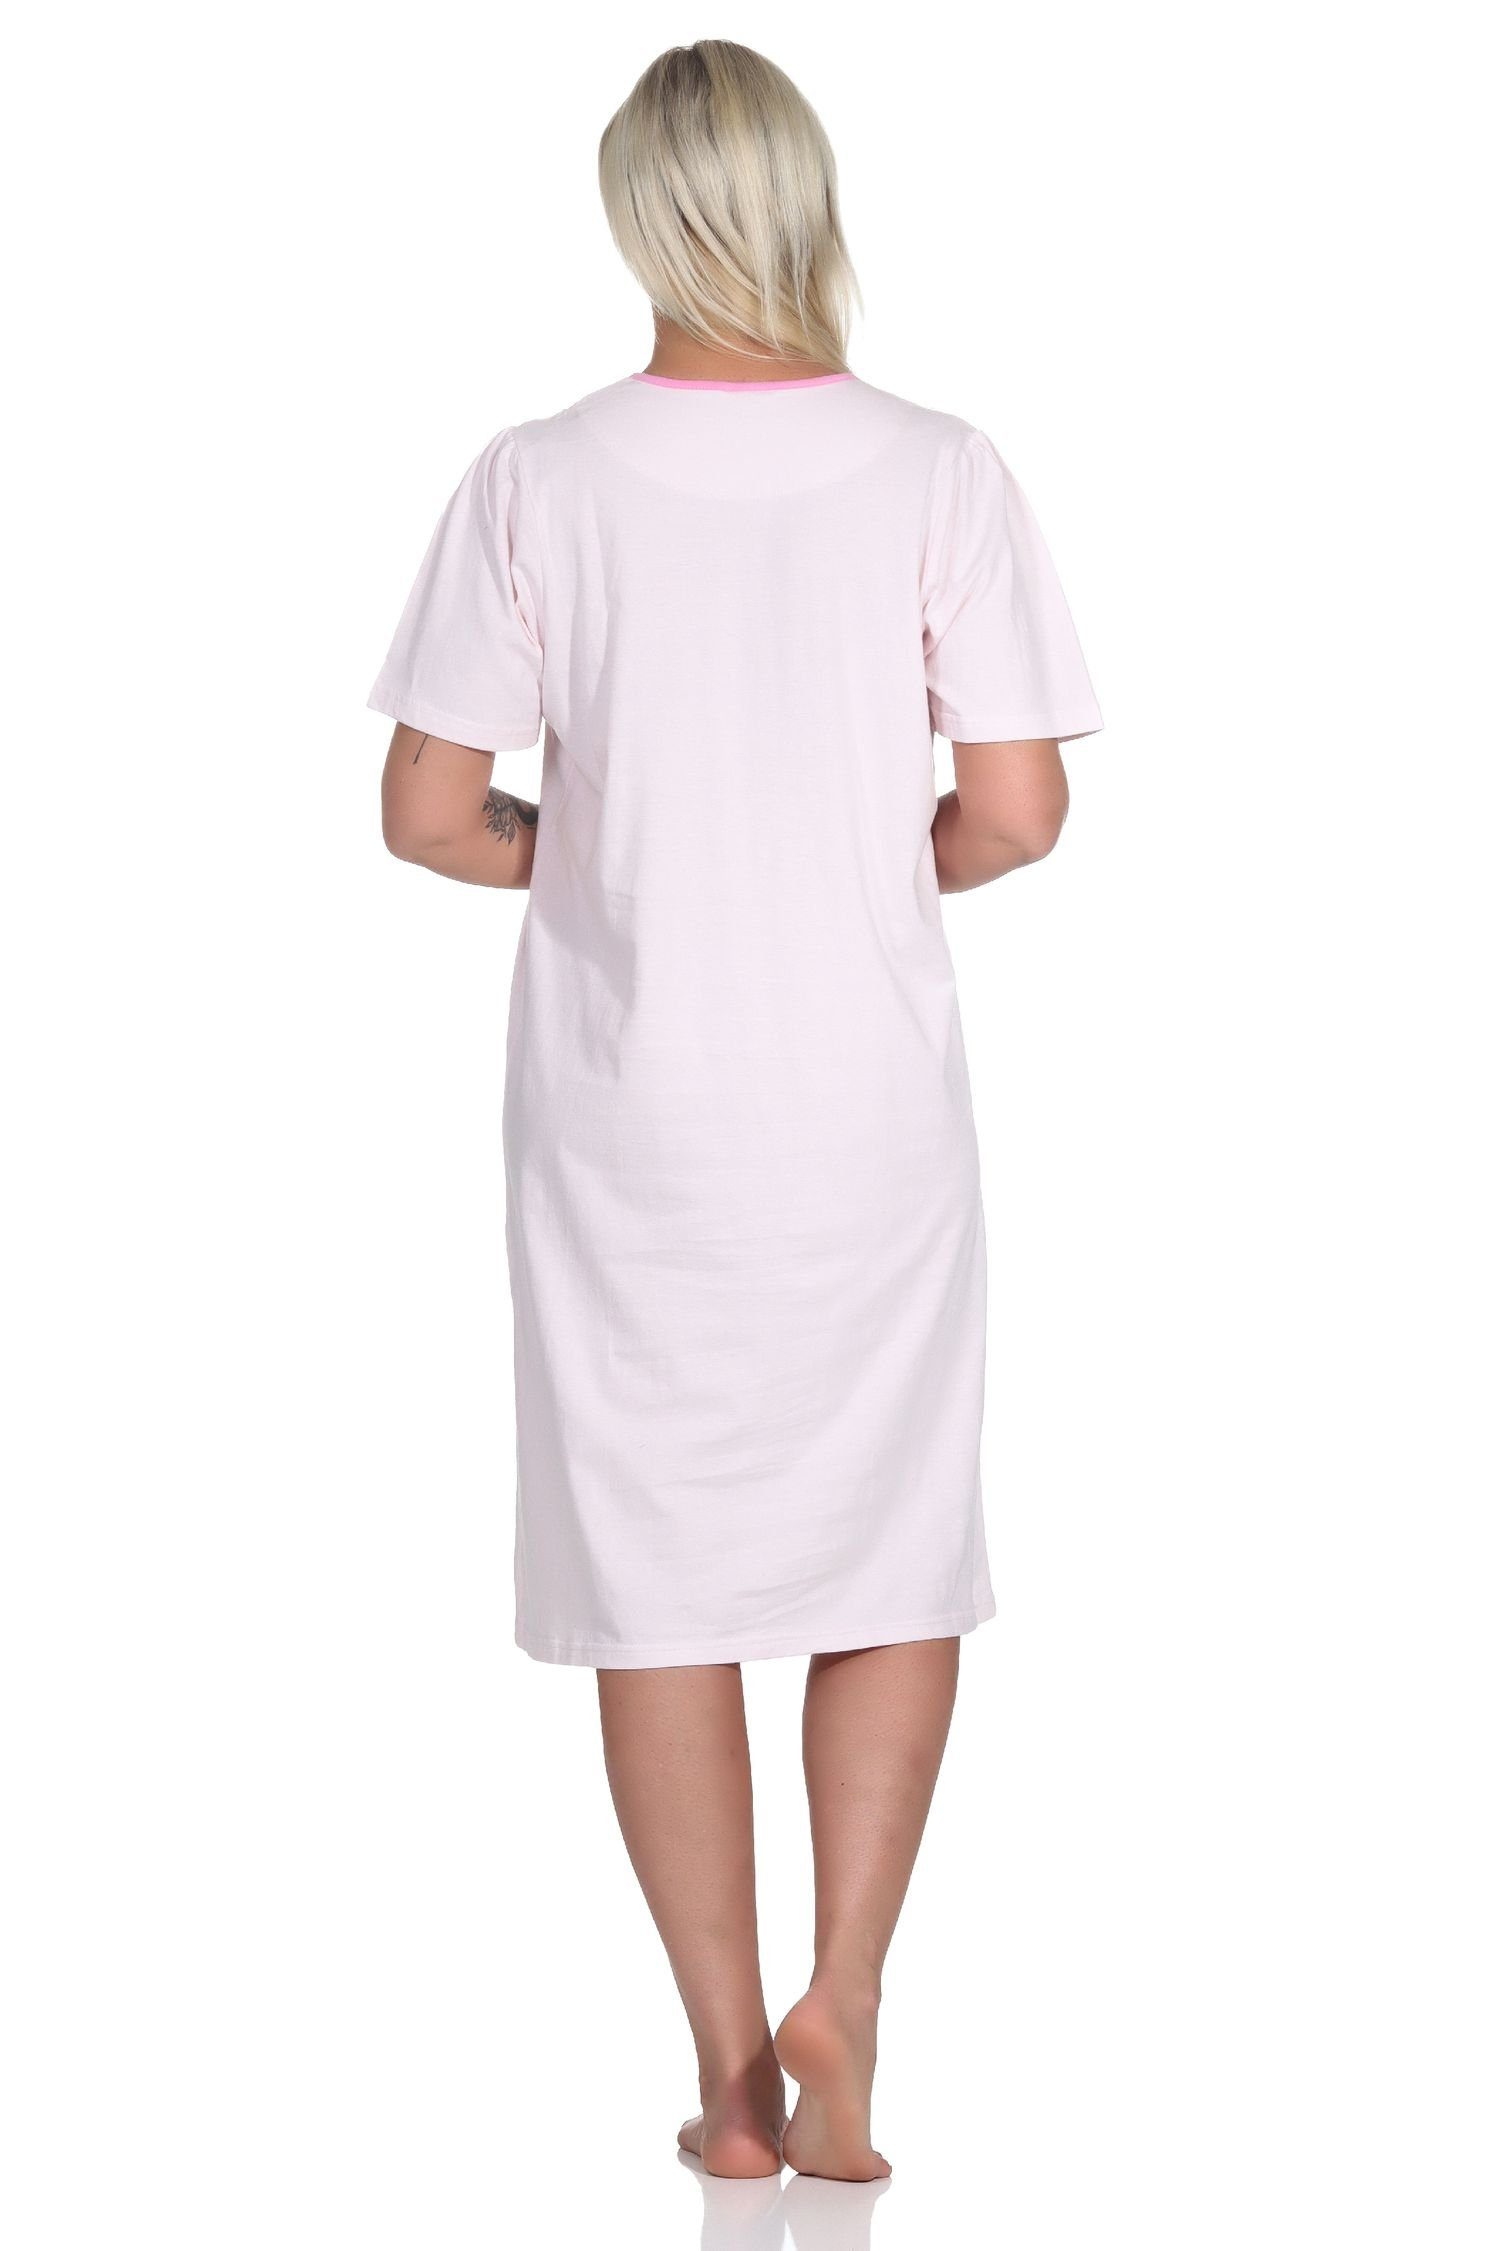 Normann Nachthemd Frauliches rosa kurzarm am Hals Knopfleiste Länge, Nachthemd,cm Damen